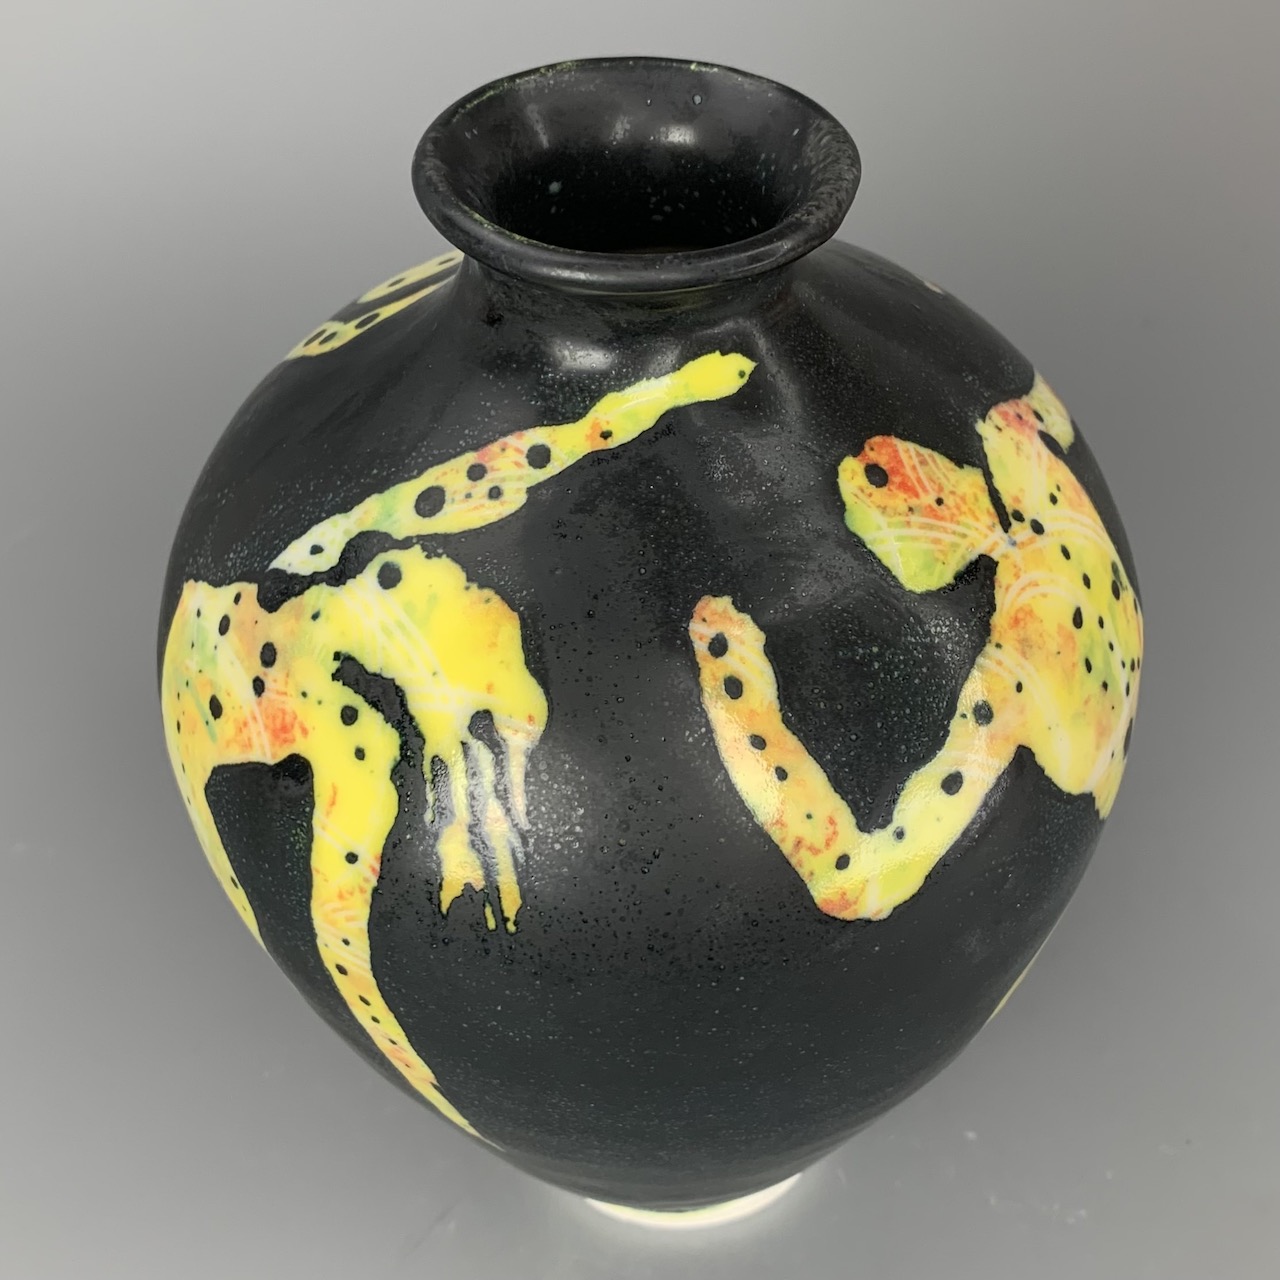 Figurative Vase in Yellow